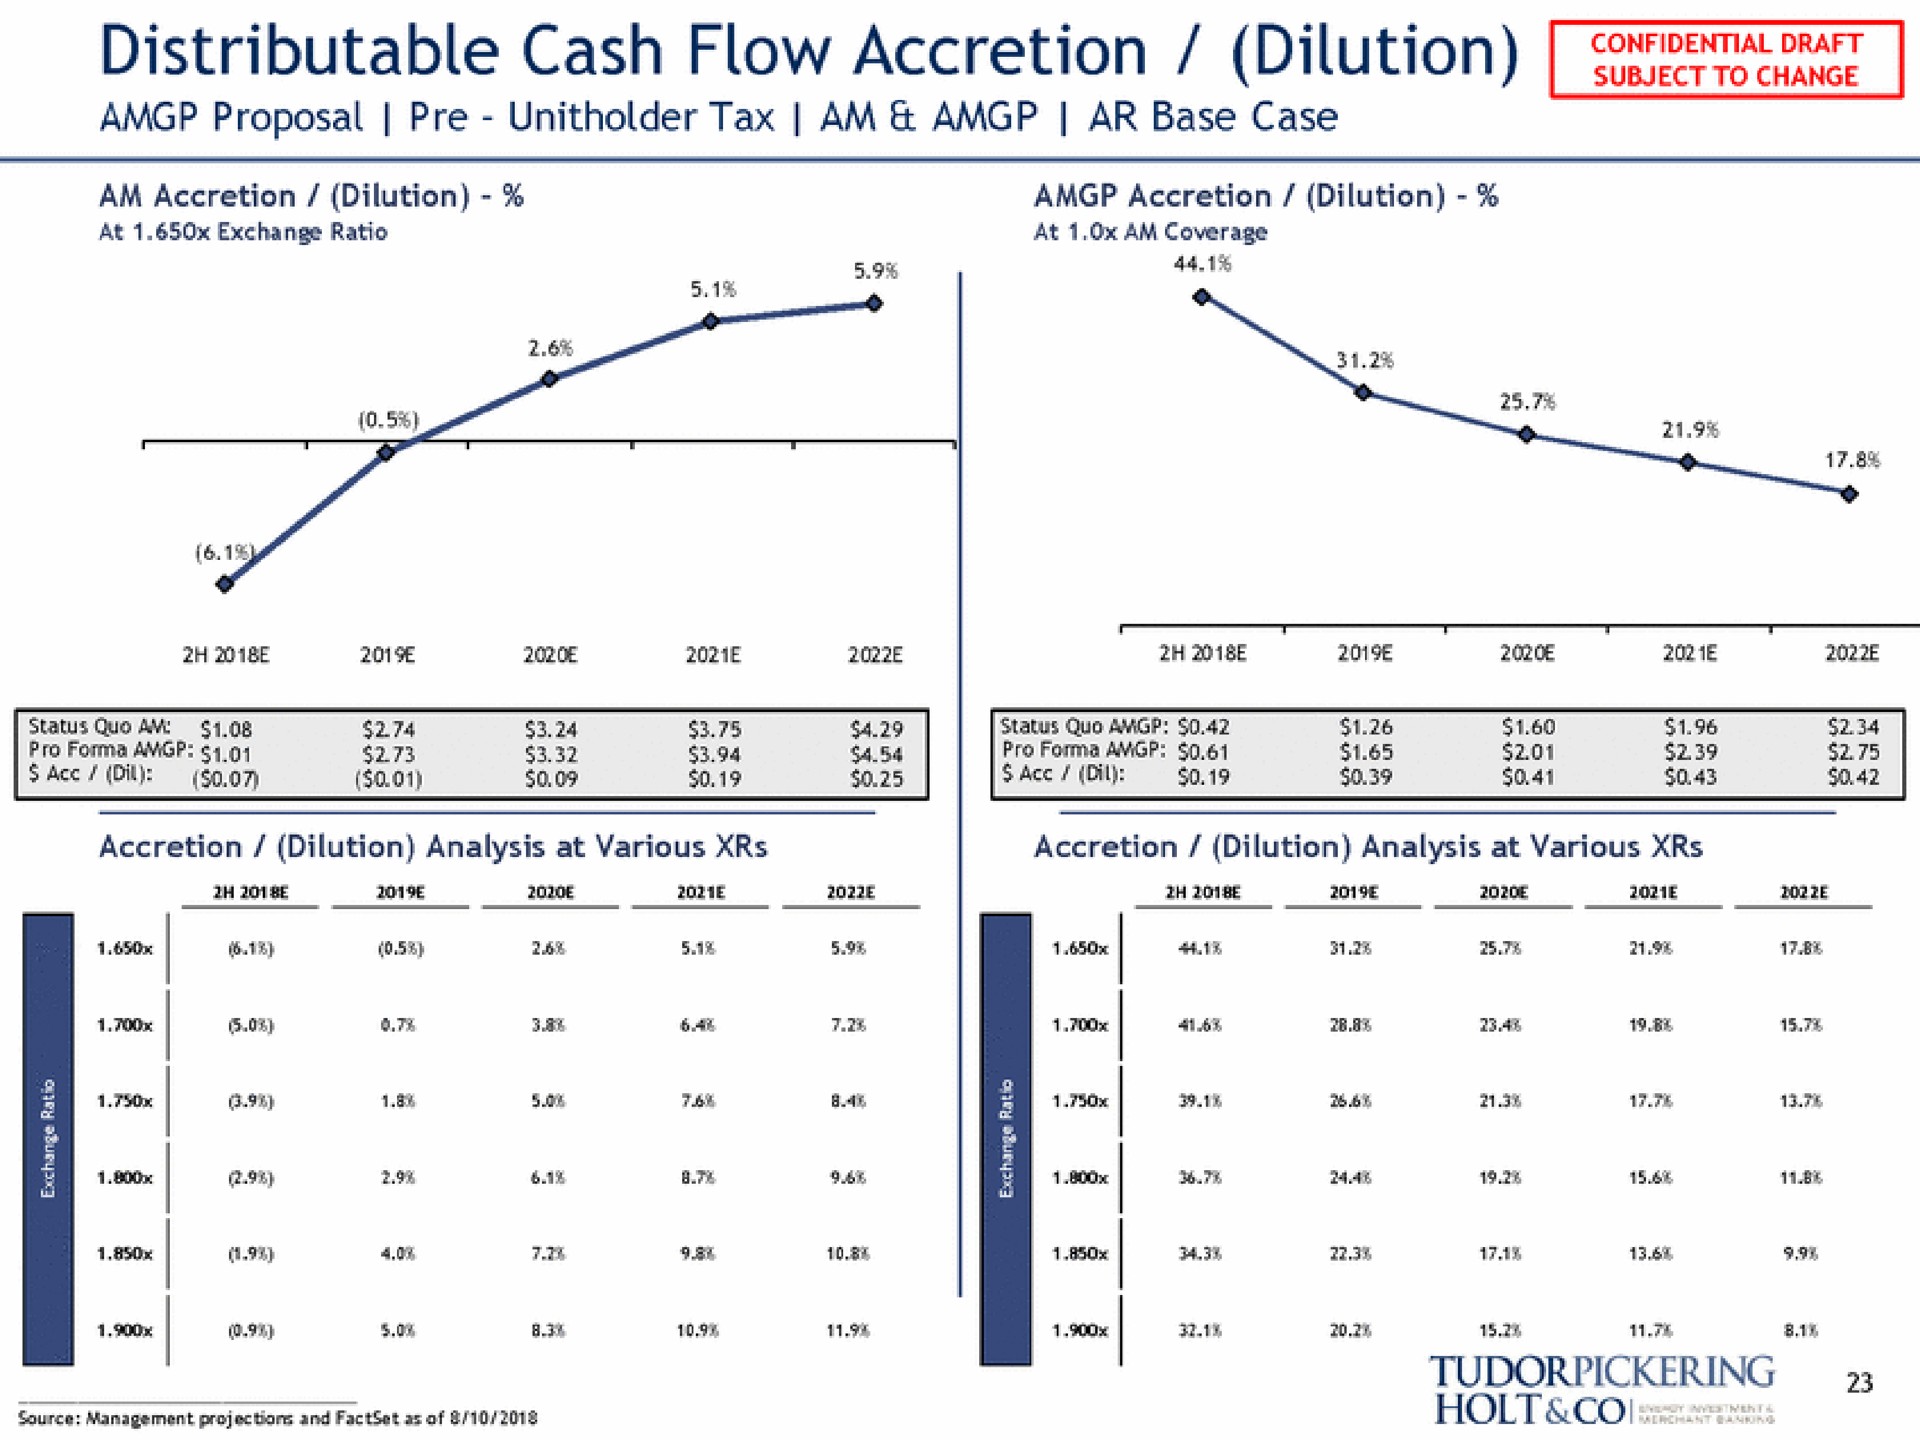 distributable cash flow accretion dilution proposal tax am base case | Tudor, Pickering, Holt & Co